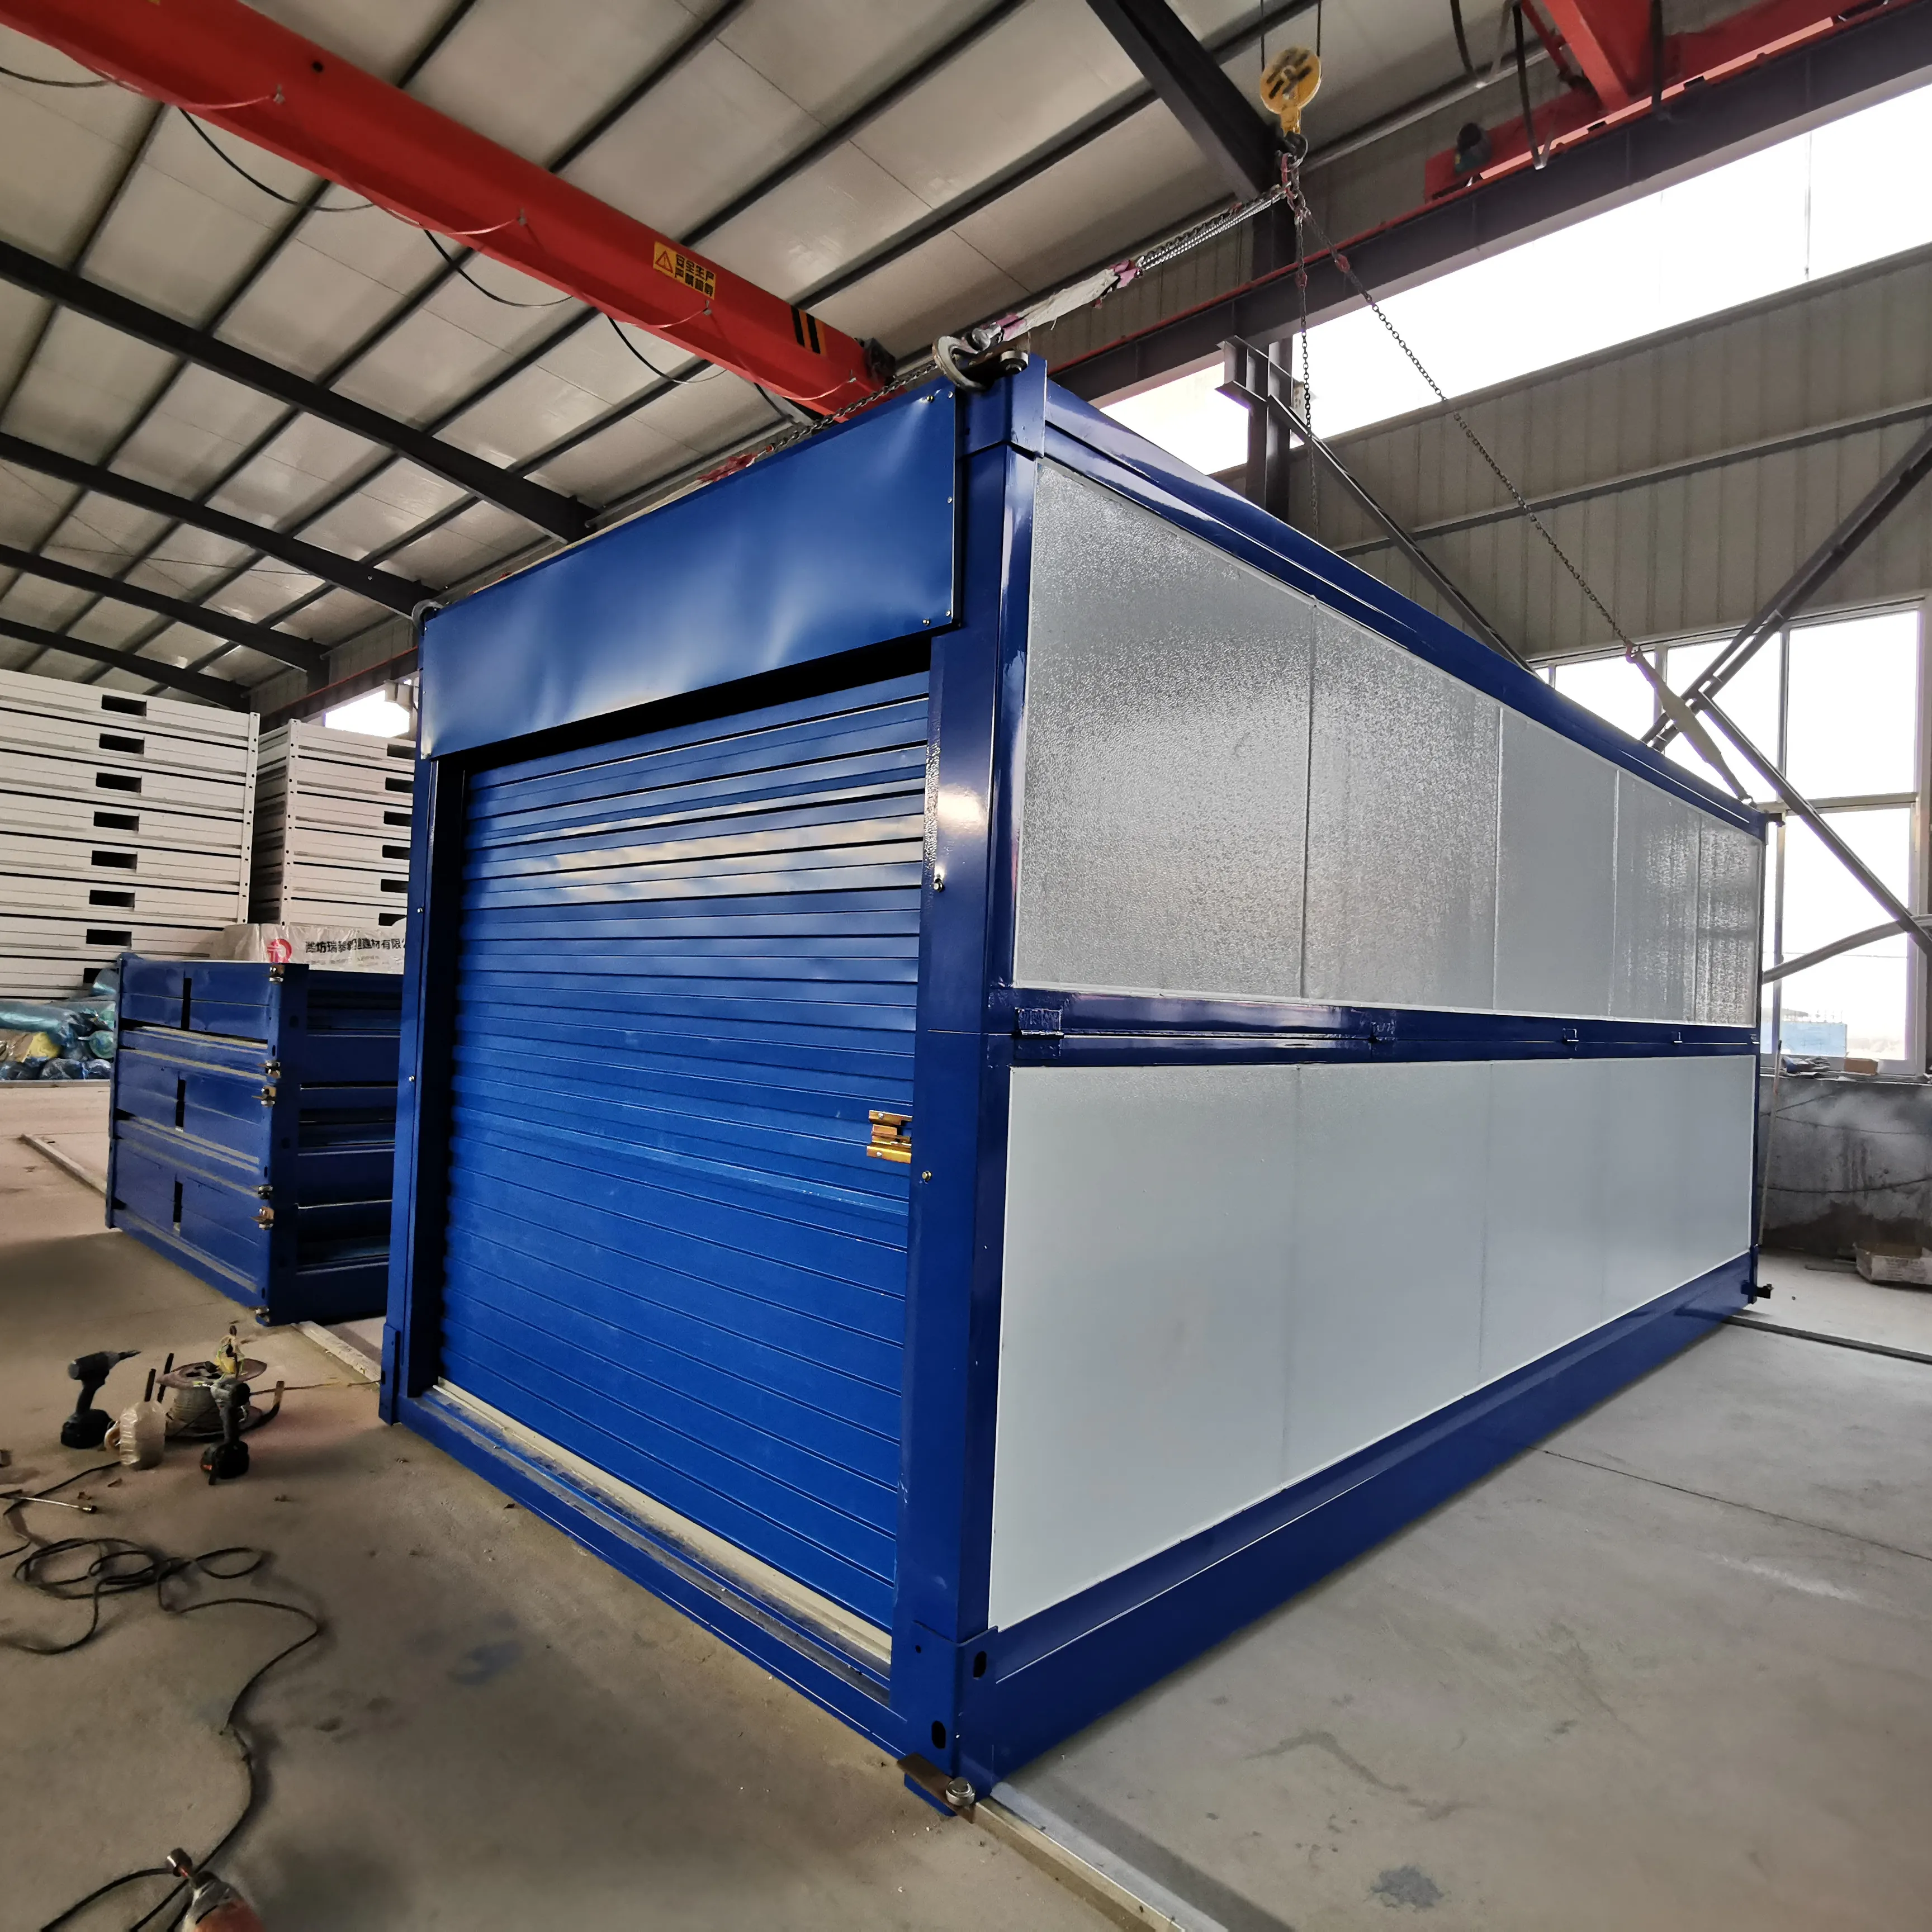 Taşınabilir cep katlanabilir genişletilebilir küçük ev prefabrik ev konteyner depolama